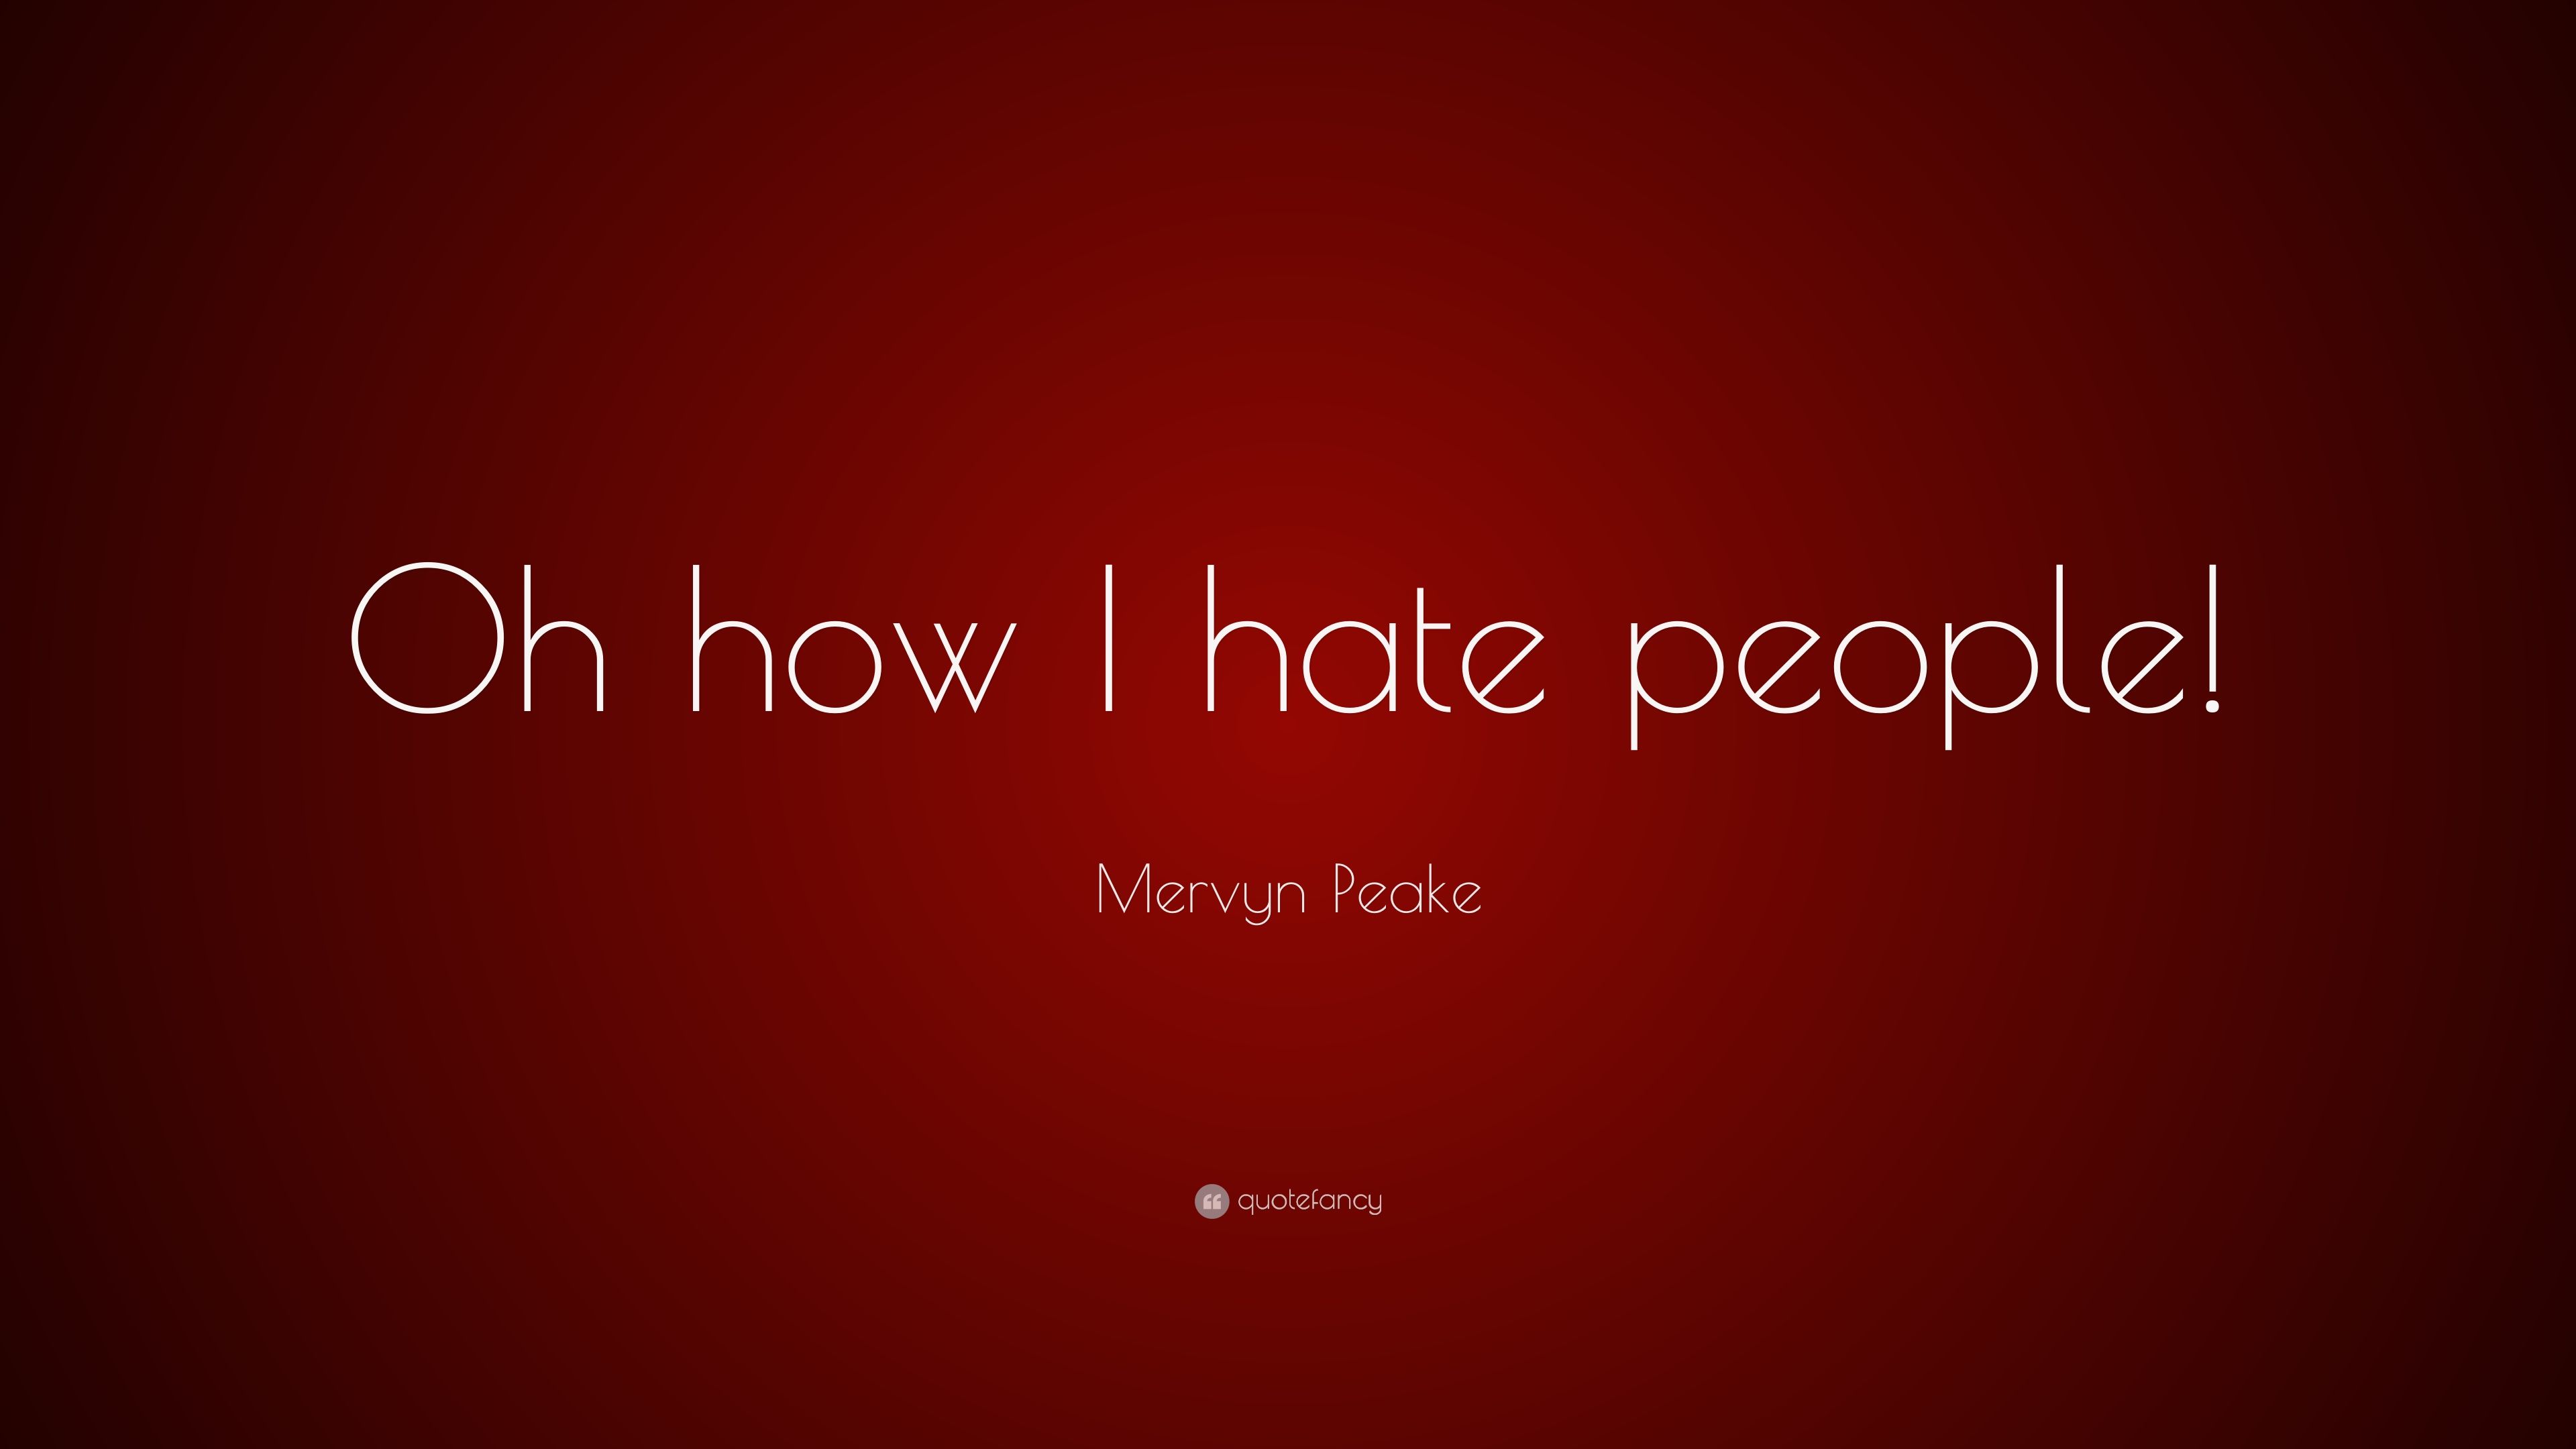 Mervyn Peake Quote: “Oh how I hate people!” (12 wallpaper)